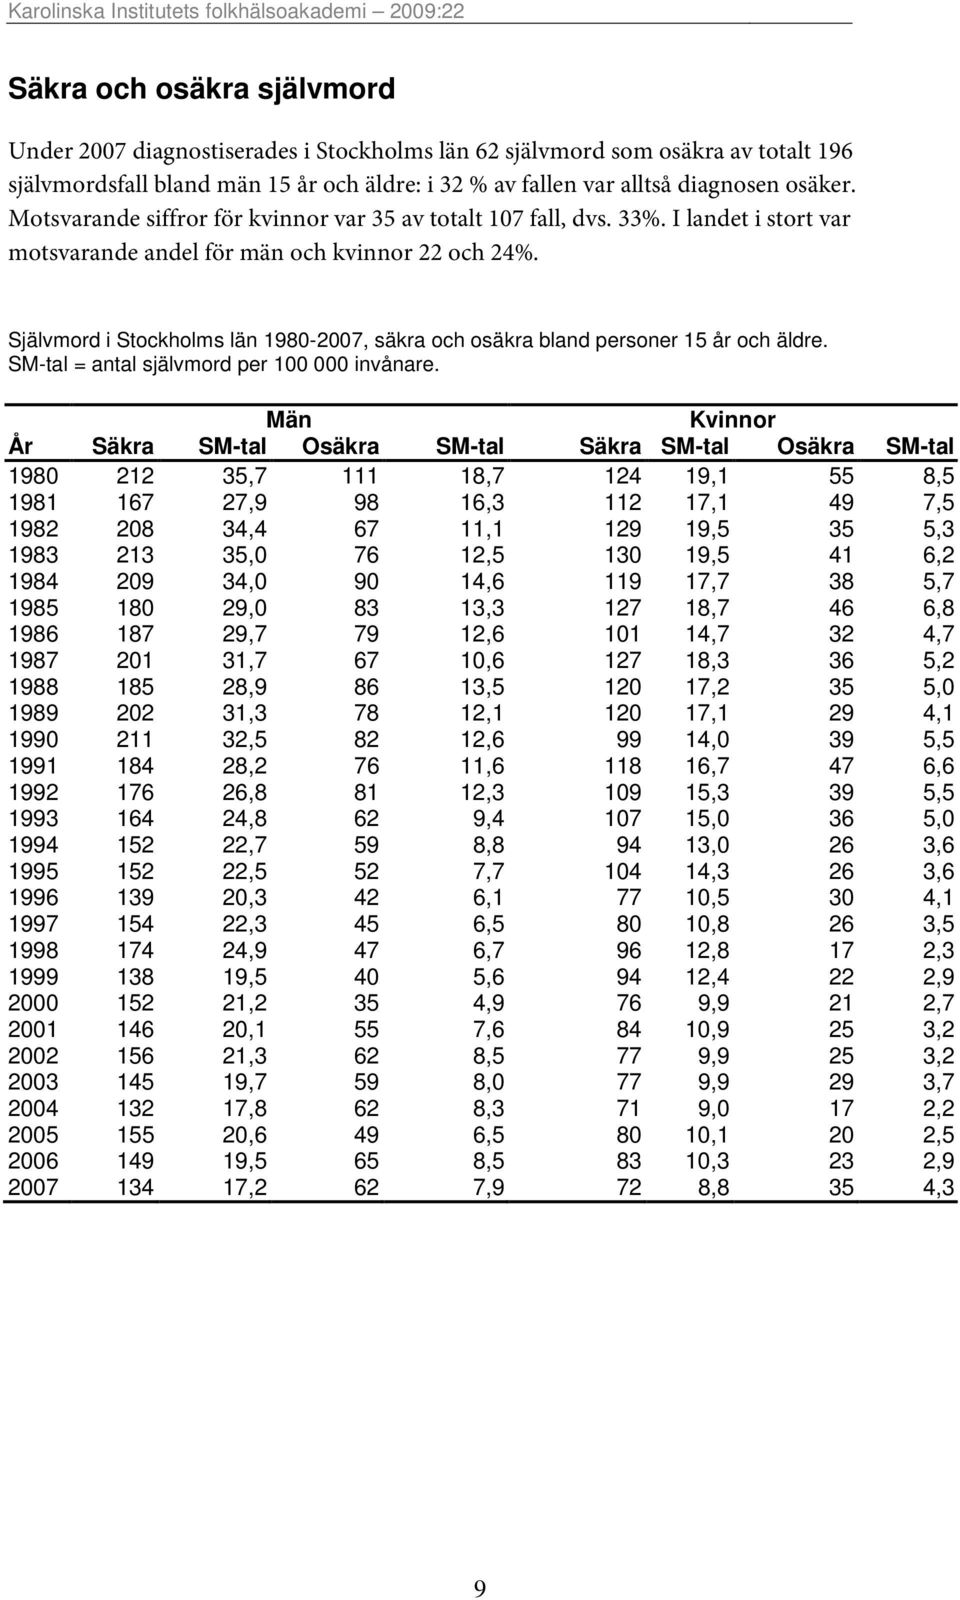 Självmord i Stockholms län 1980-2007, säkra och osäkra bland personer 15 år och äldre. SM-tal = antal självmord per 100 000 invånare.